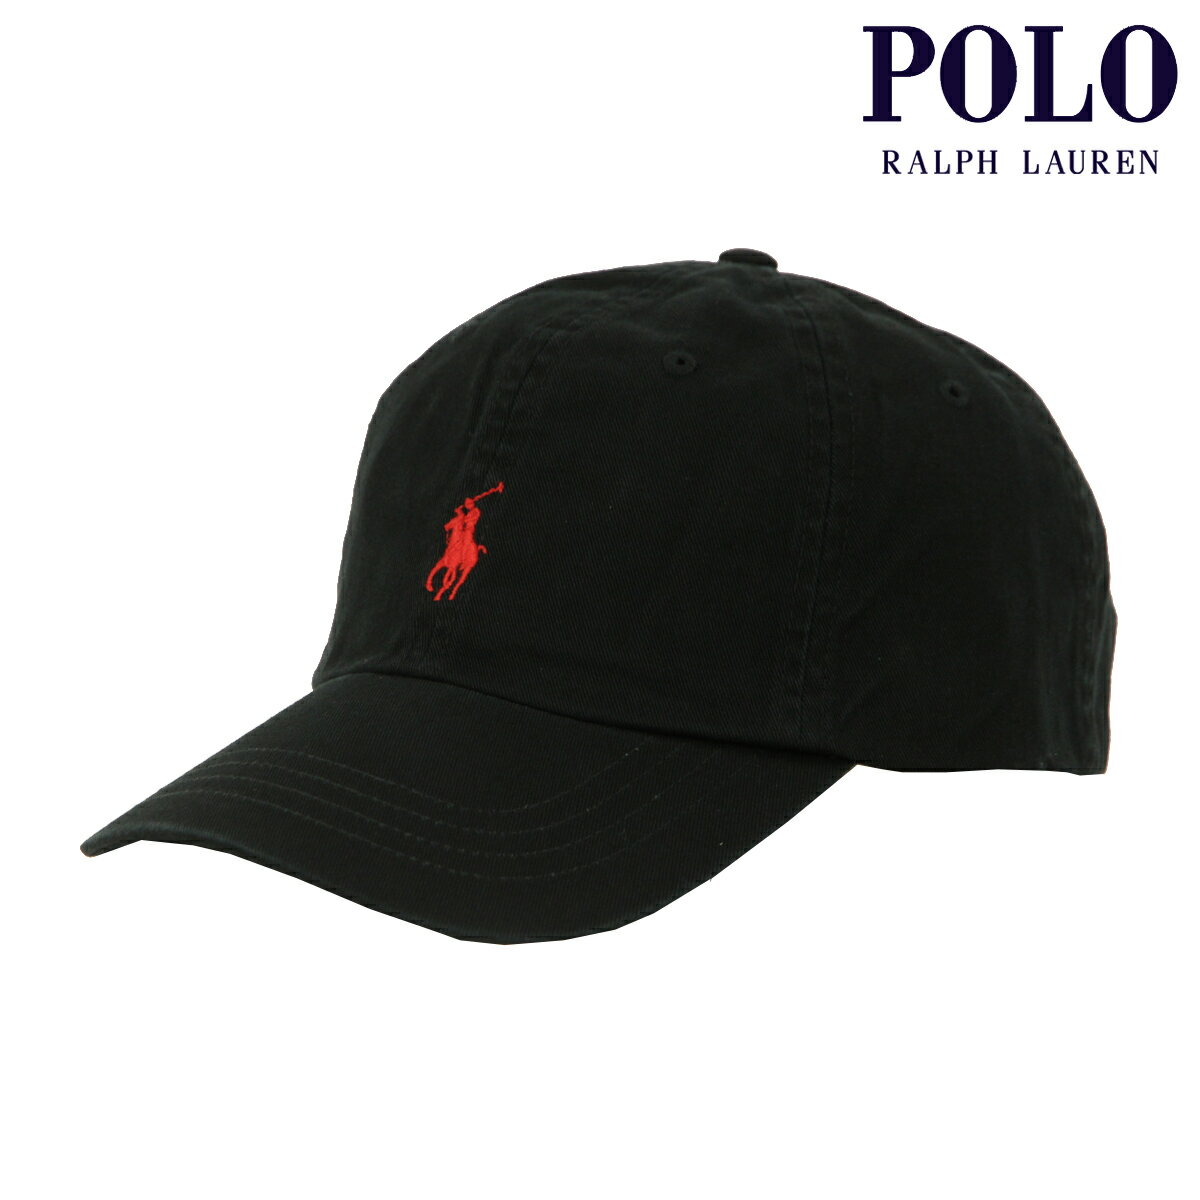 ポロ ラルフ ローレン ポロ ラルフローレン メンズ レディース キャップ 正規品 POLO RALPH LAUREN 帽子 ロゴ ポニー CLASSIC SPORTS CAP BLACK 710548524 父の日 プレゼント ラッピング